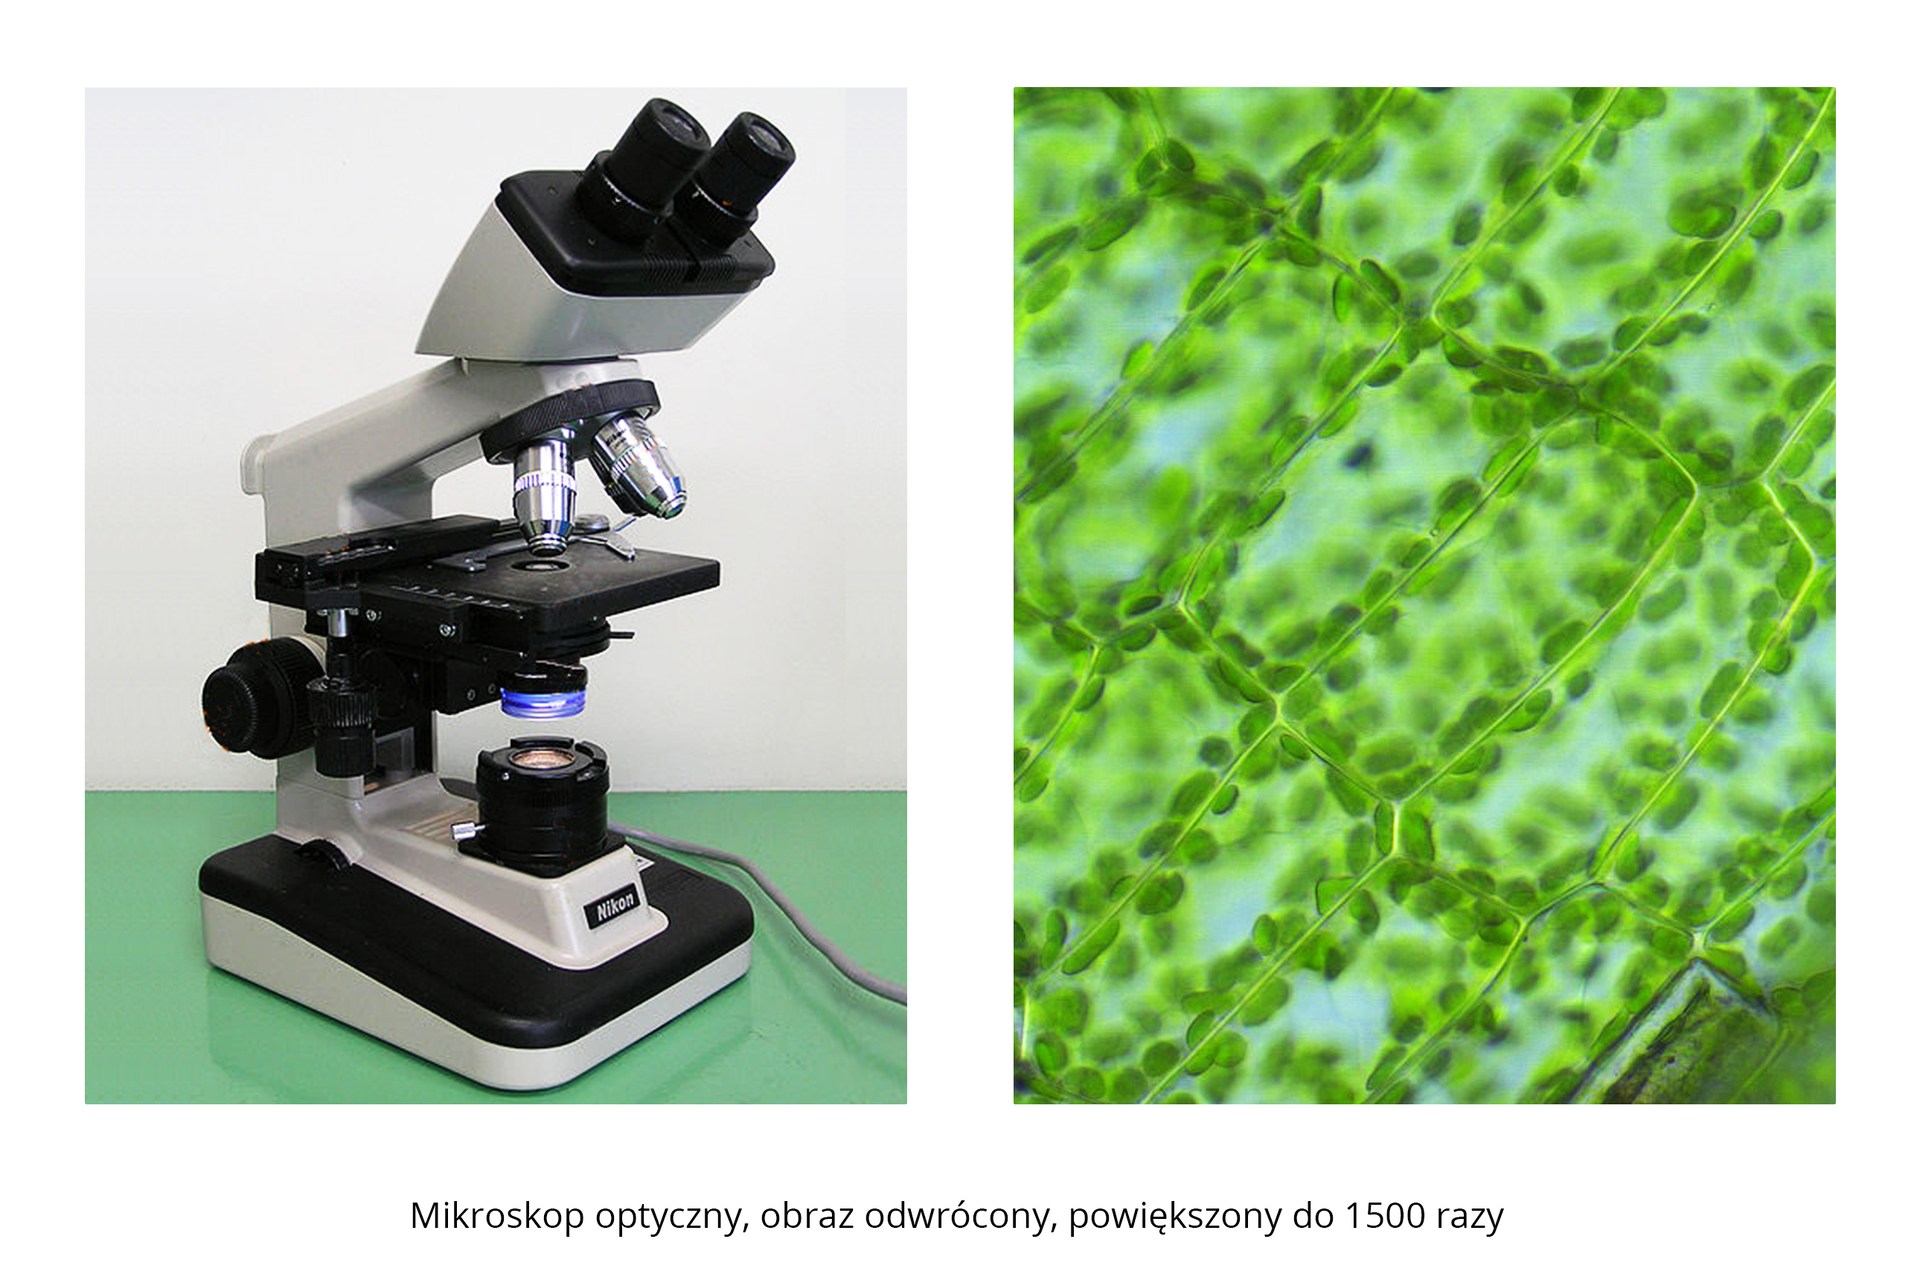 Galeria składa się z trzech fotografii. Trzecia fotografia składa się z dwóch części. Lewa przedstawia mikroskop optyczny. Prawa przedstawia zielone komórki roślinne, powiększone 1500 razy. Możemy obserwować części składowe komórki.